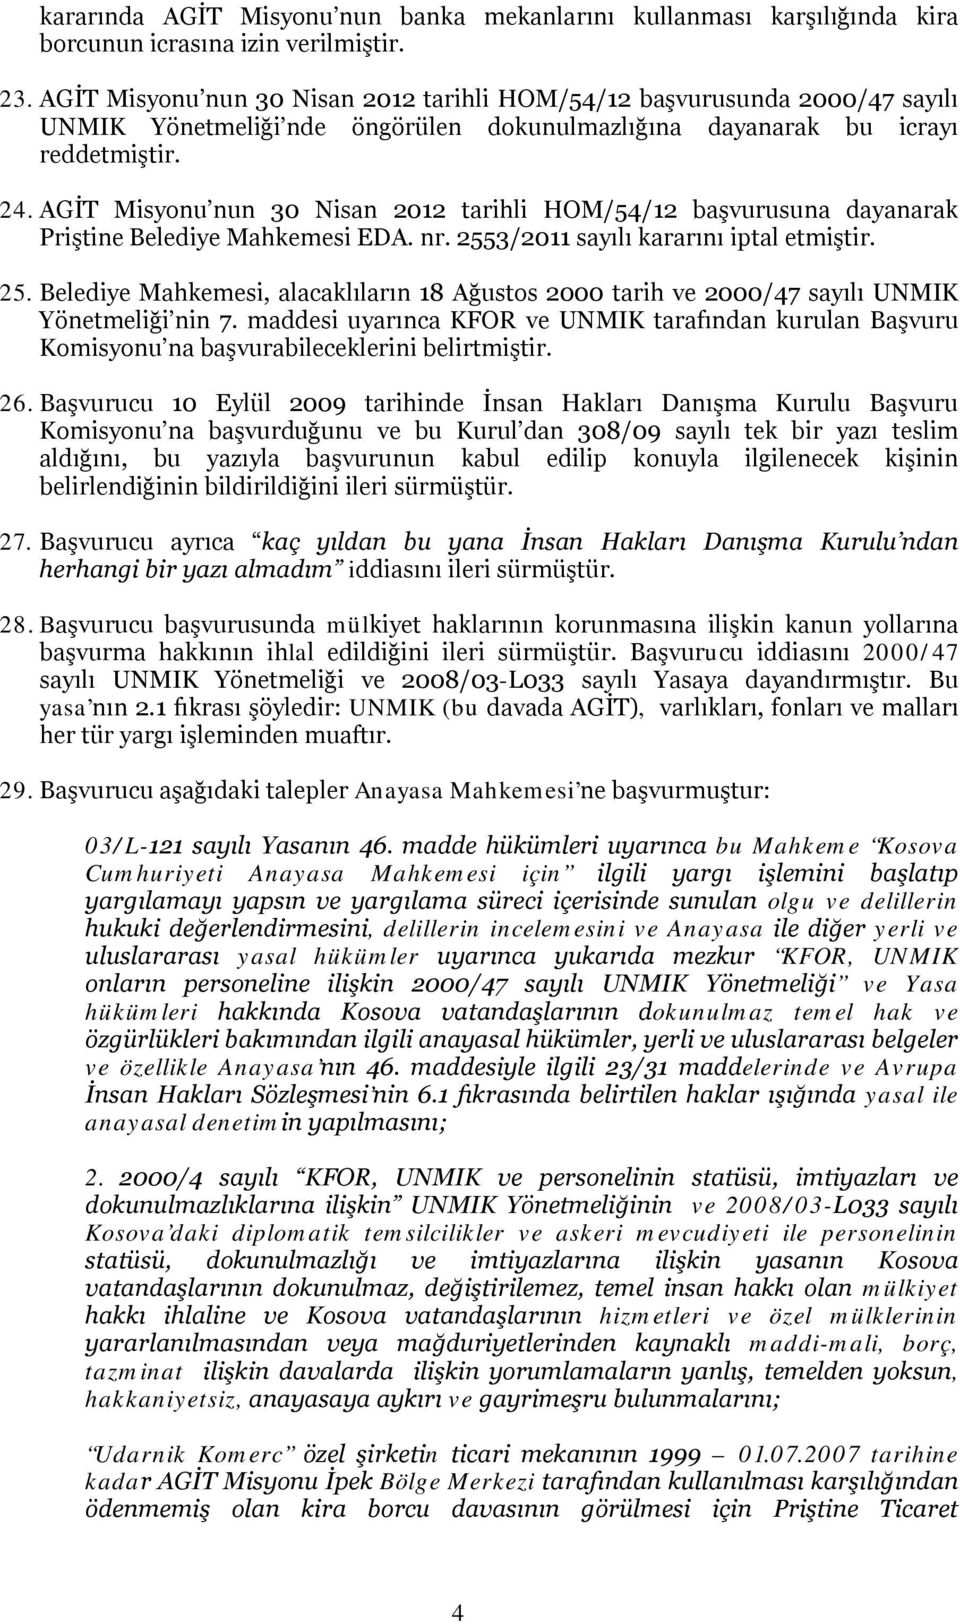 AGİT Misyonu nun 30 Nisan 2012 tarihli HOM/54/12 başvurusuna dayanarak Priştine Belediye Mahkemesi EDA. nr. 255